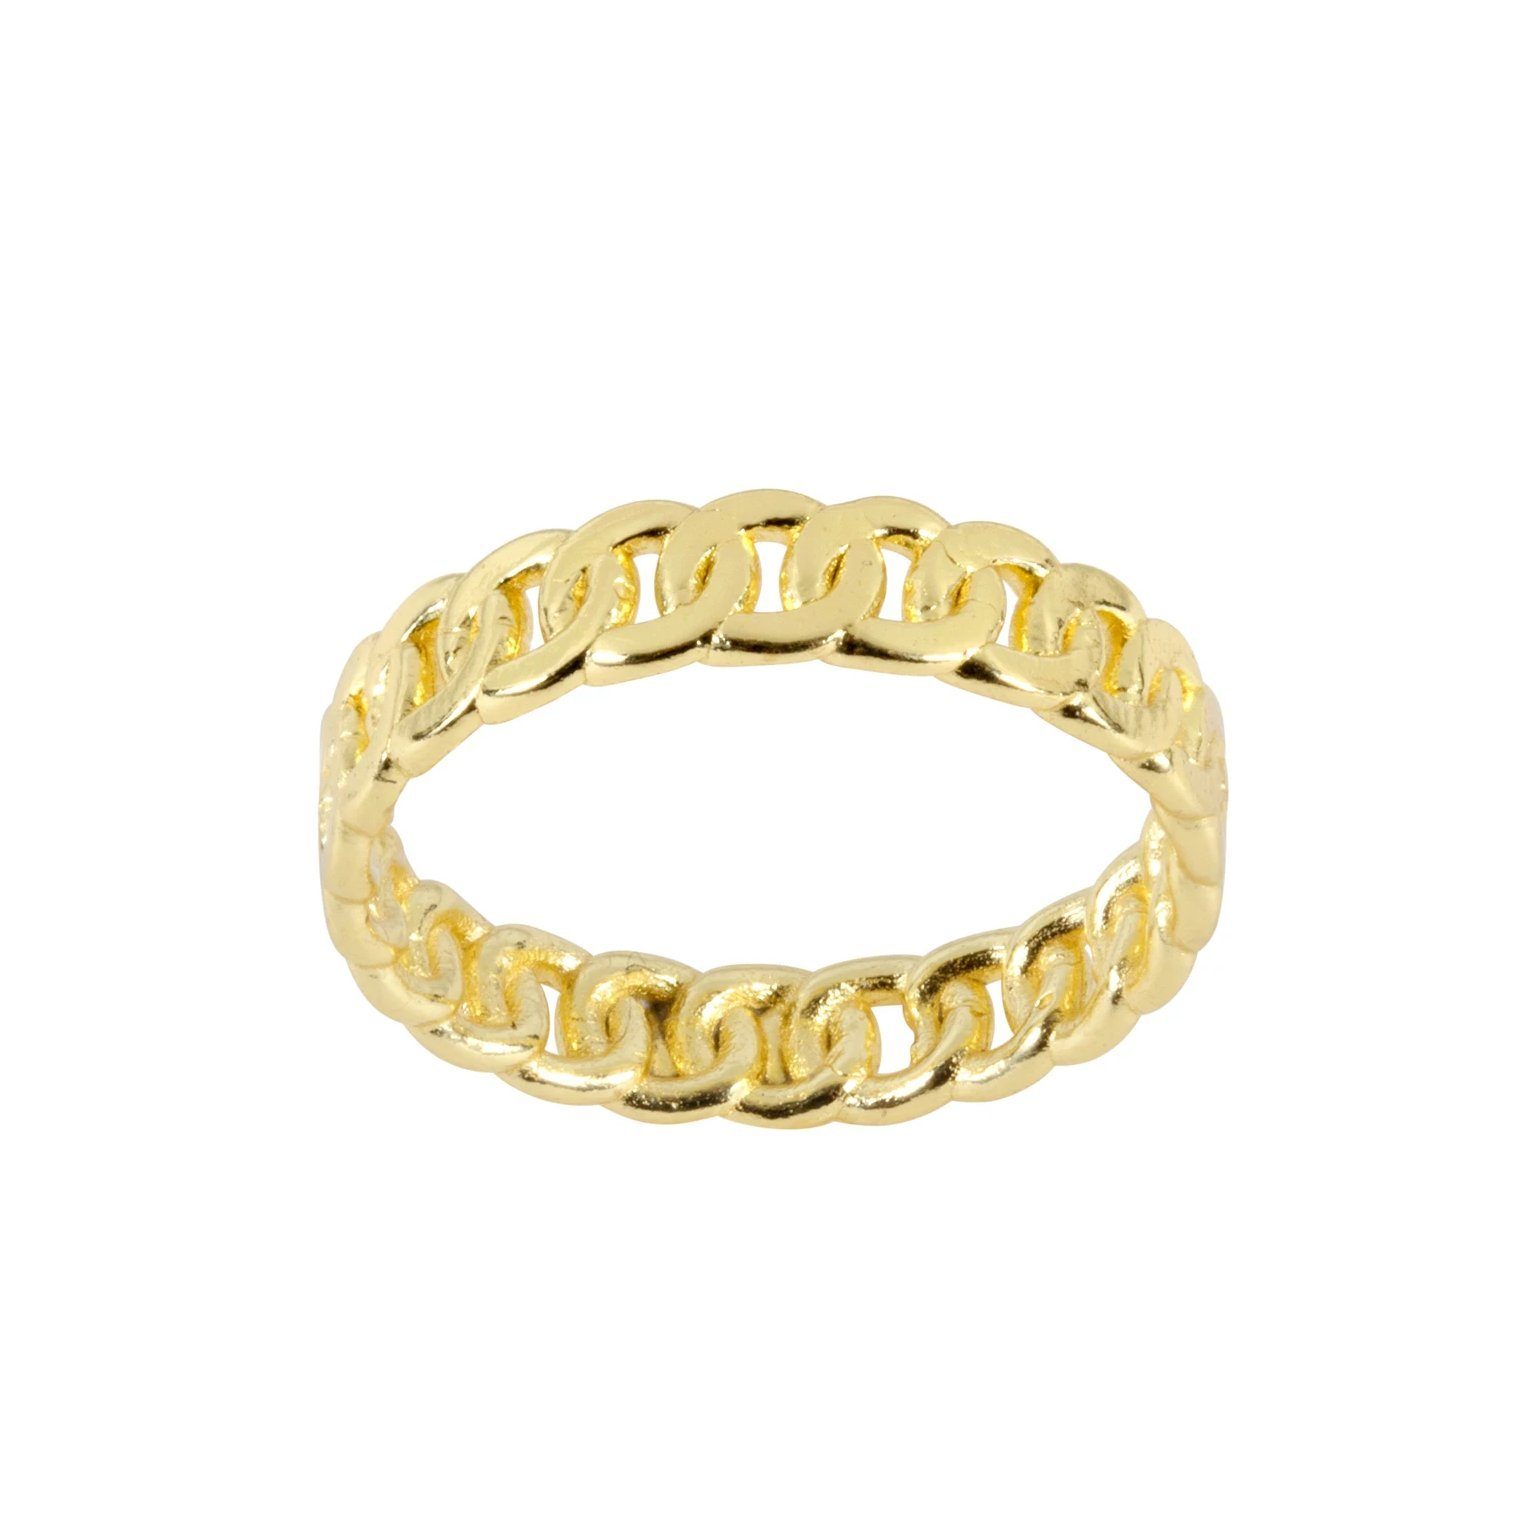 Stunning Handmade Gold Chain For Men